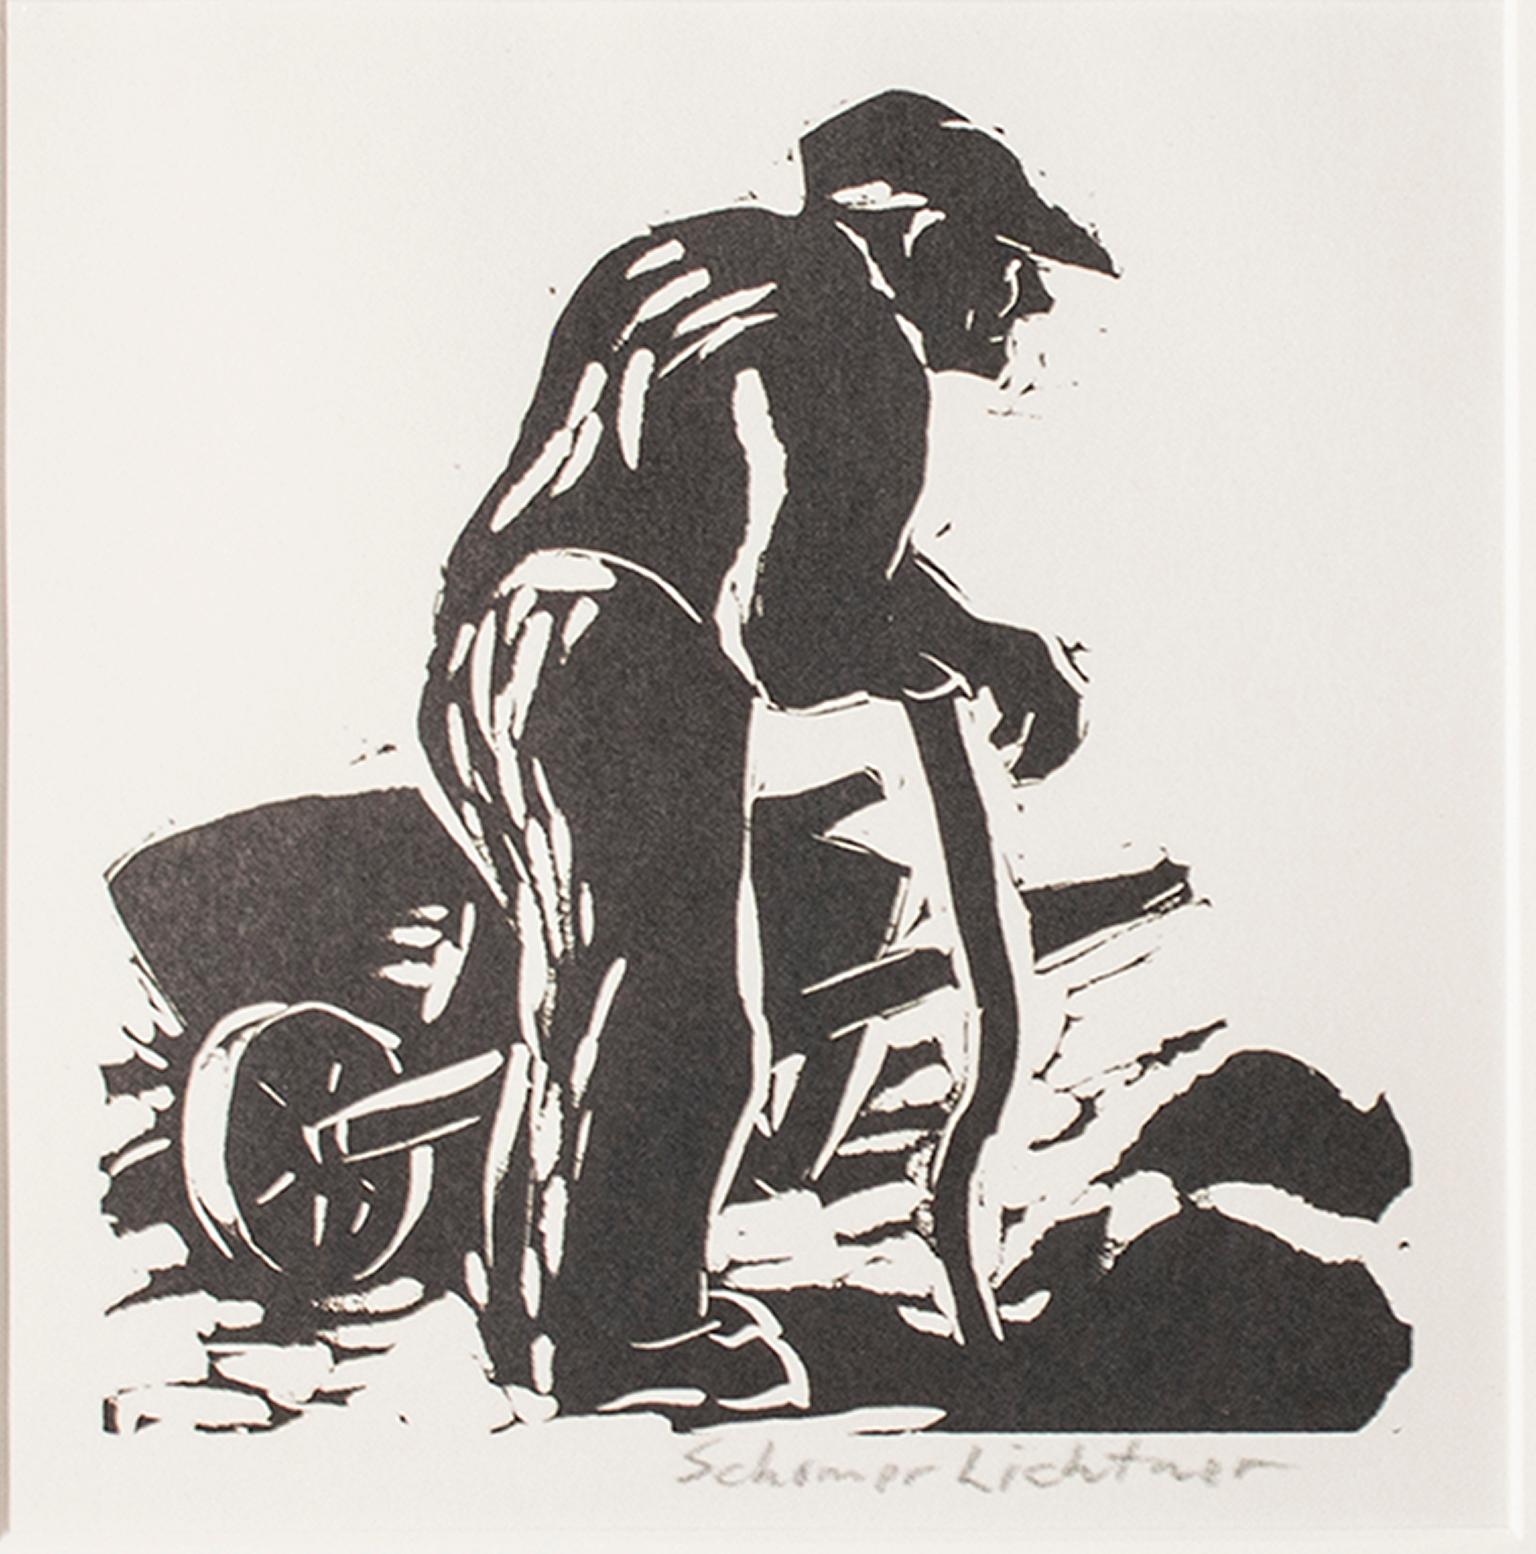 "Rest" ist ein Original-Linoldruck von Schomer Lichtner, signiert in der unteren rechten Ecke. Es zeigt einen Mann, der sich mitten in der Arbeit auf einem Stock ausruht.

Bild: 5.63" x 5.38"
Gerahmt: 14.93" x 14.81"

Der Künstler Schomer Lichtner